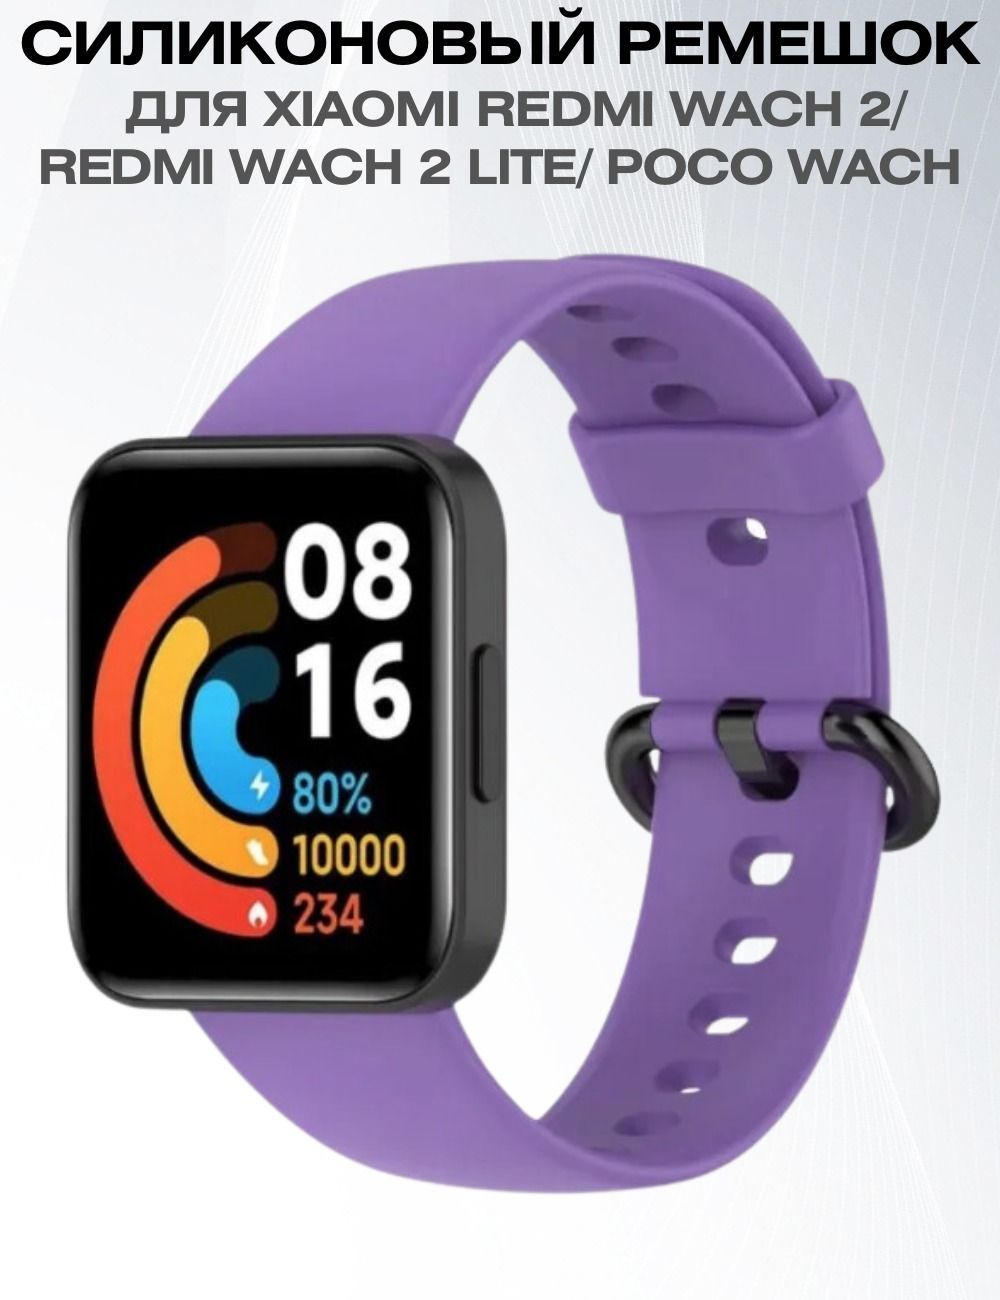 Часы redmi watch 4 отзывы. Ремешки на редми вотч 2. Смарт часы редми вотч. Redmi watch 2 Lite. Redmi watch 2 Lite ремешки.